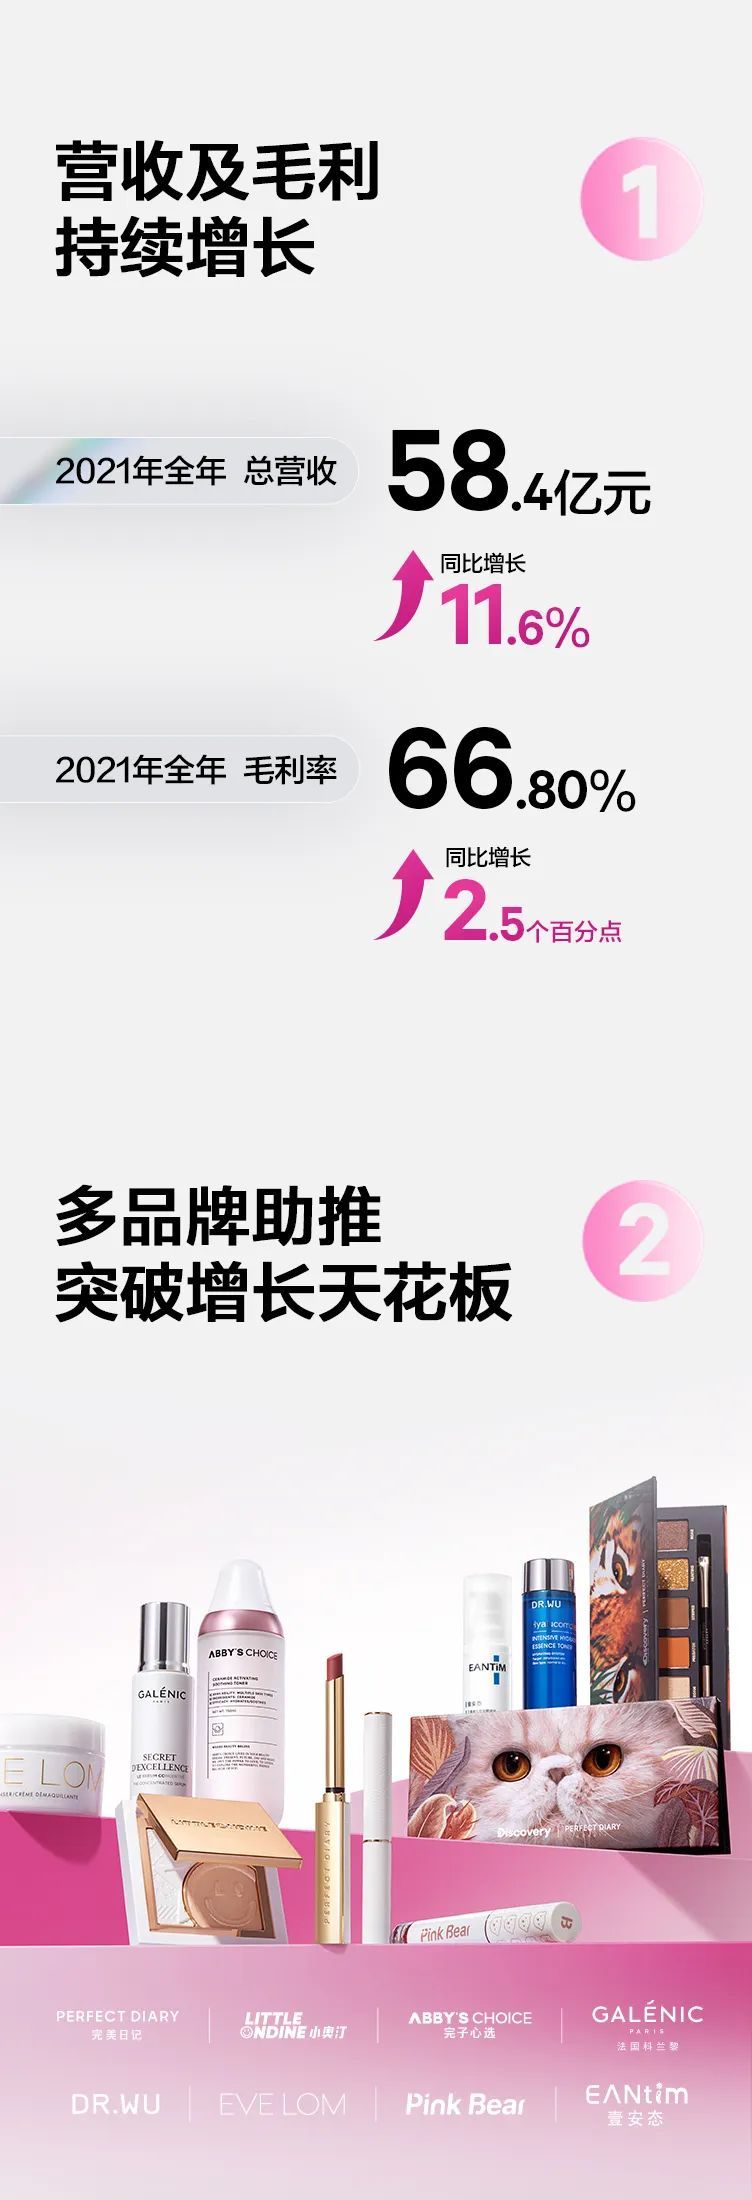 逸仙电商2021年营收58.4亿元 同比增长11.6%